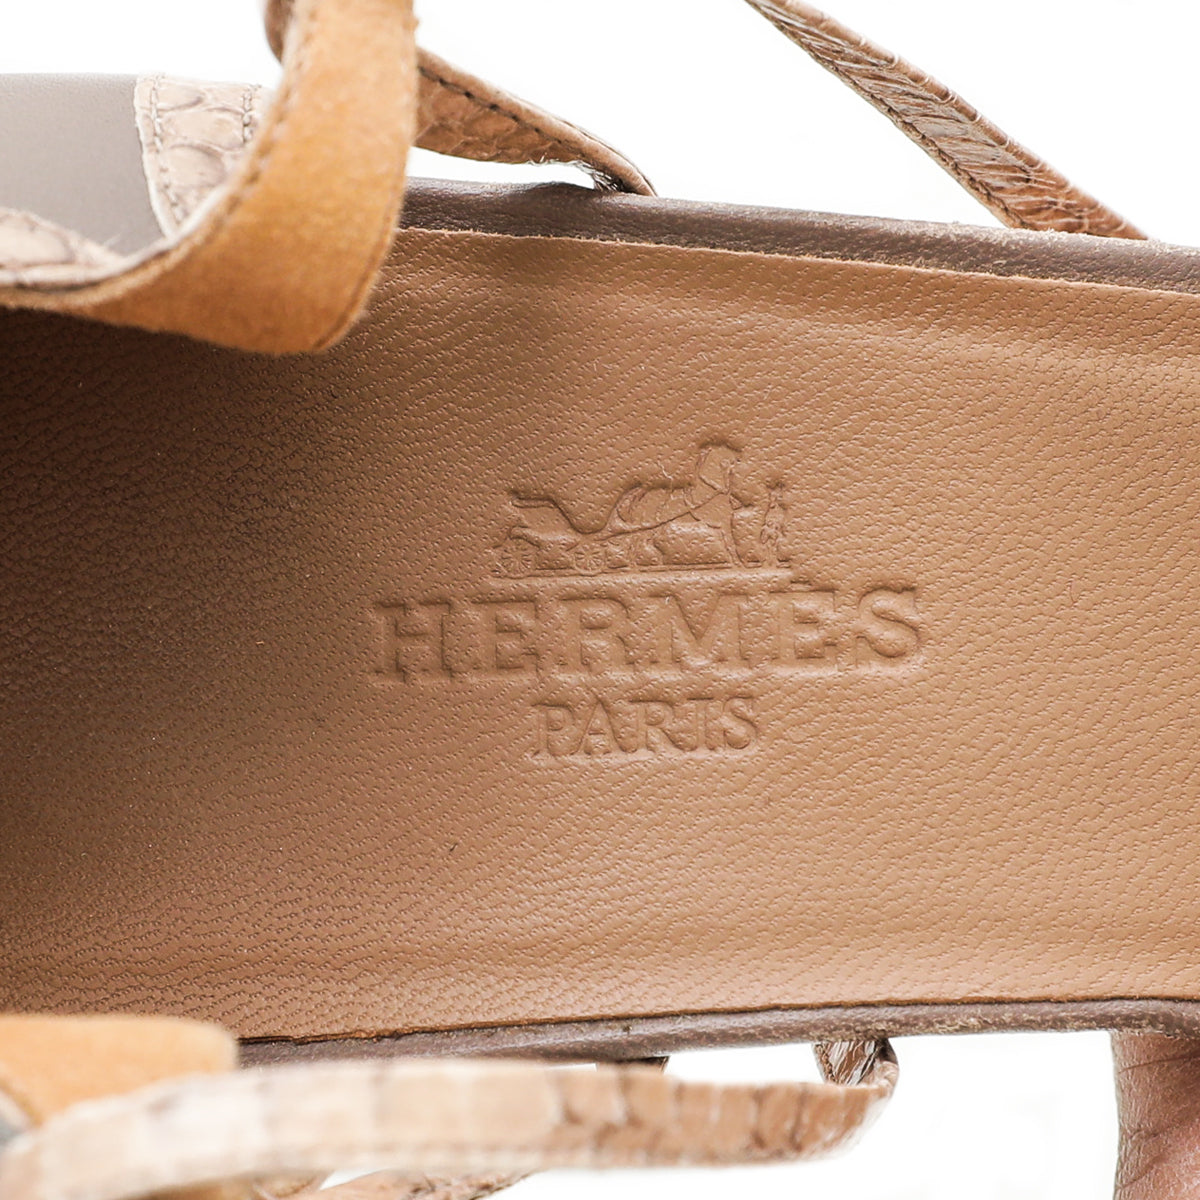 Hermes Bicolor Python Ankle Strap Sandal 38